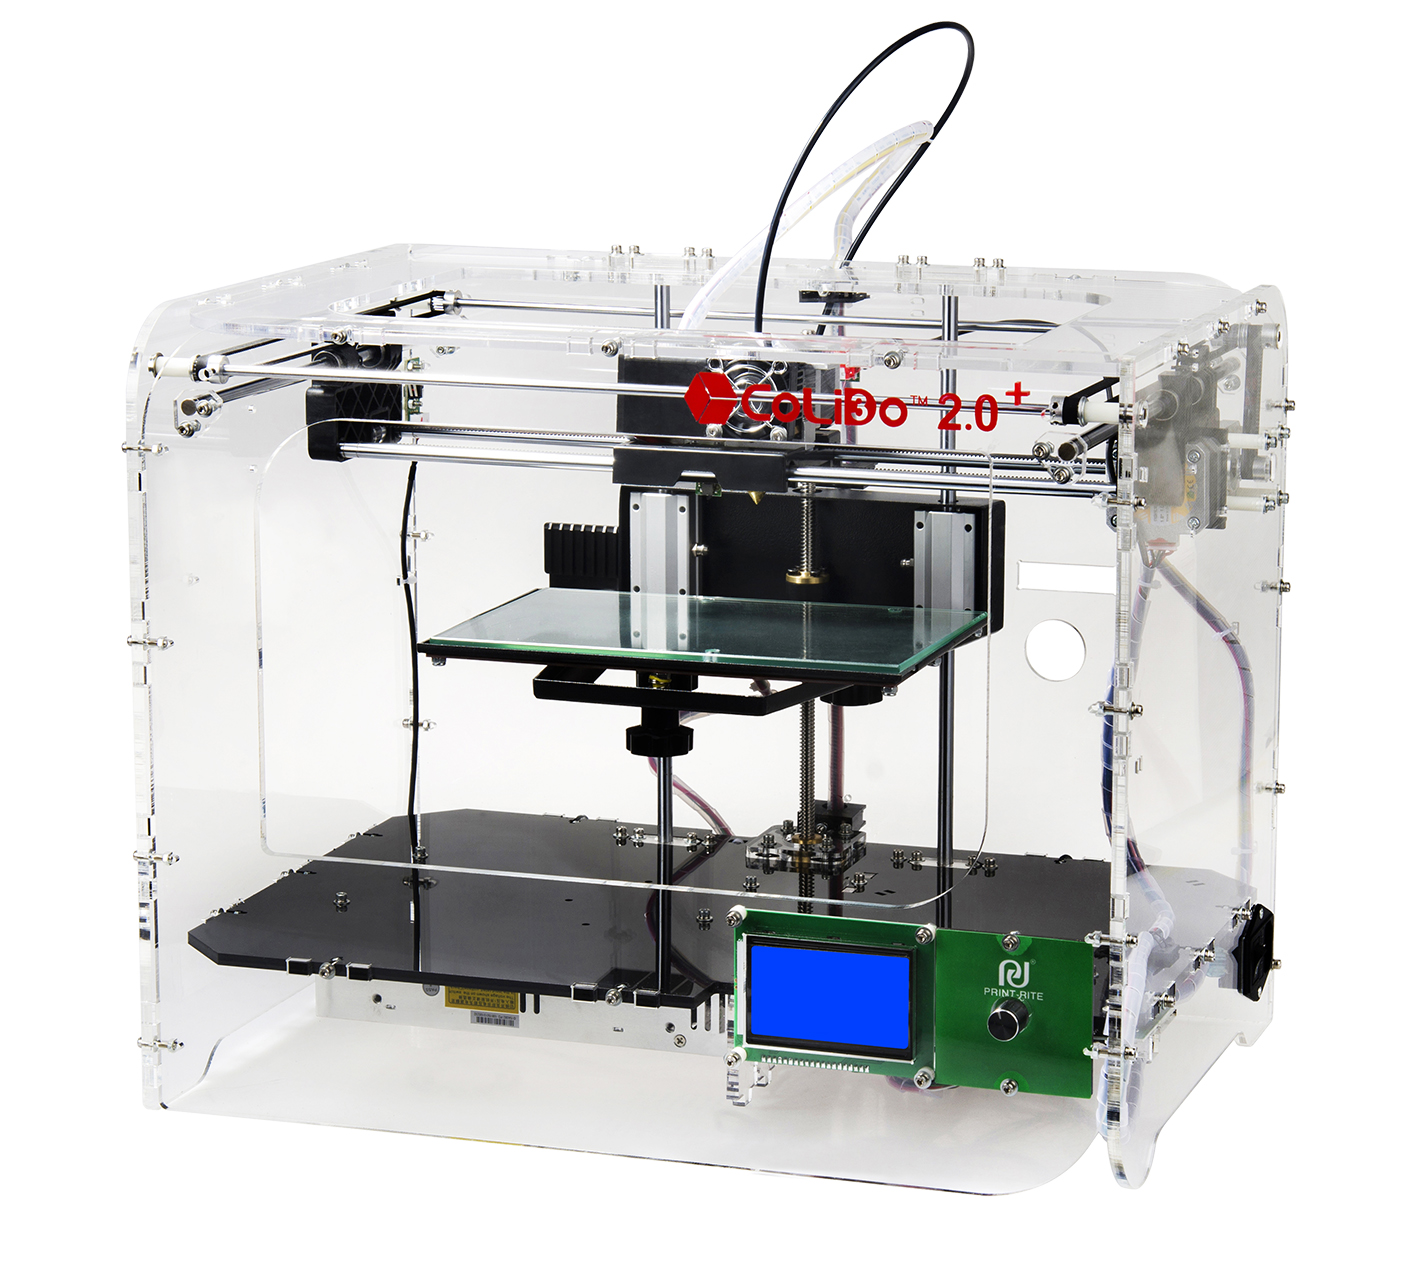 Impresoras 3D CoLiDo. Referencia En El Sector Educativo Para El Diario Económico Cinco Días